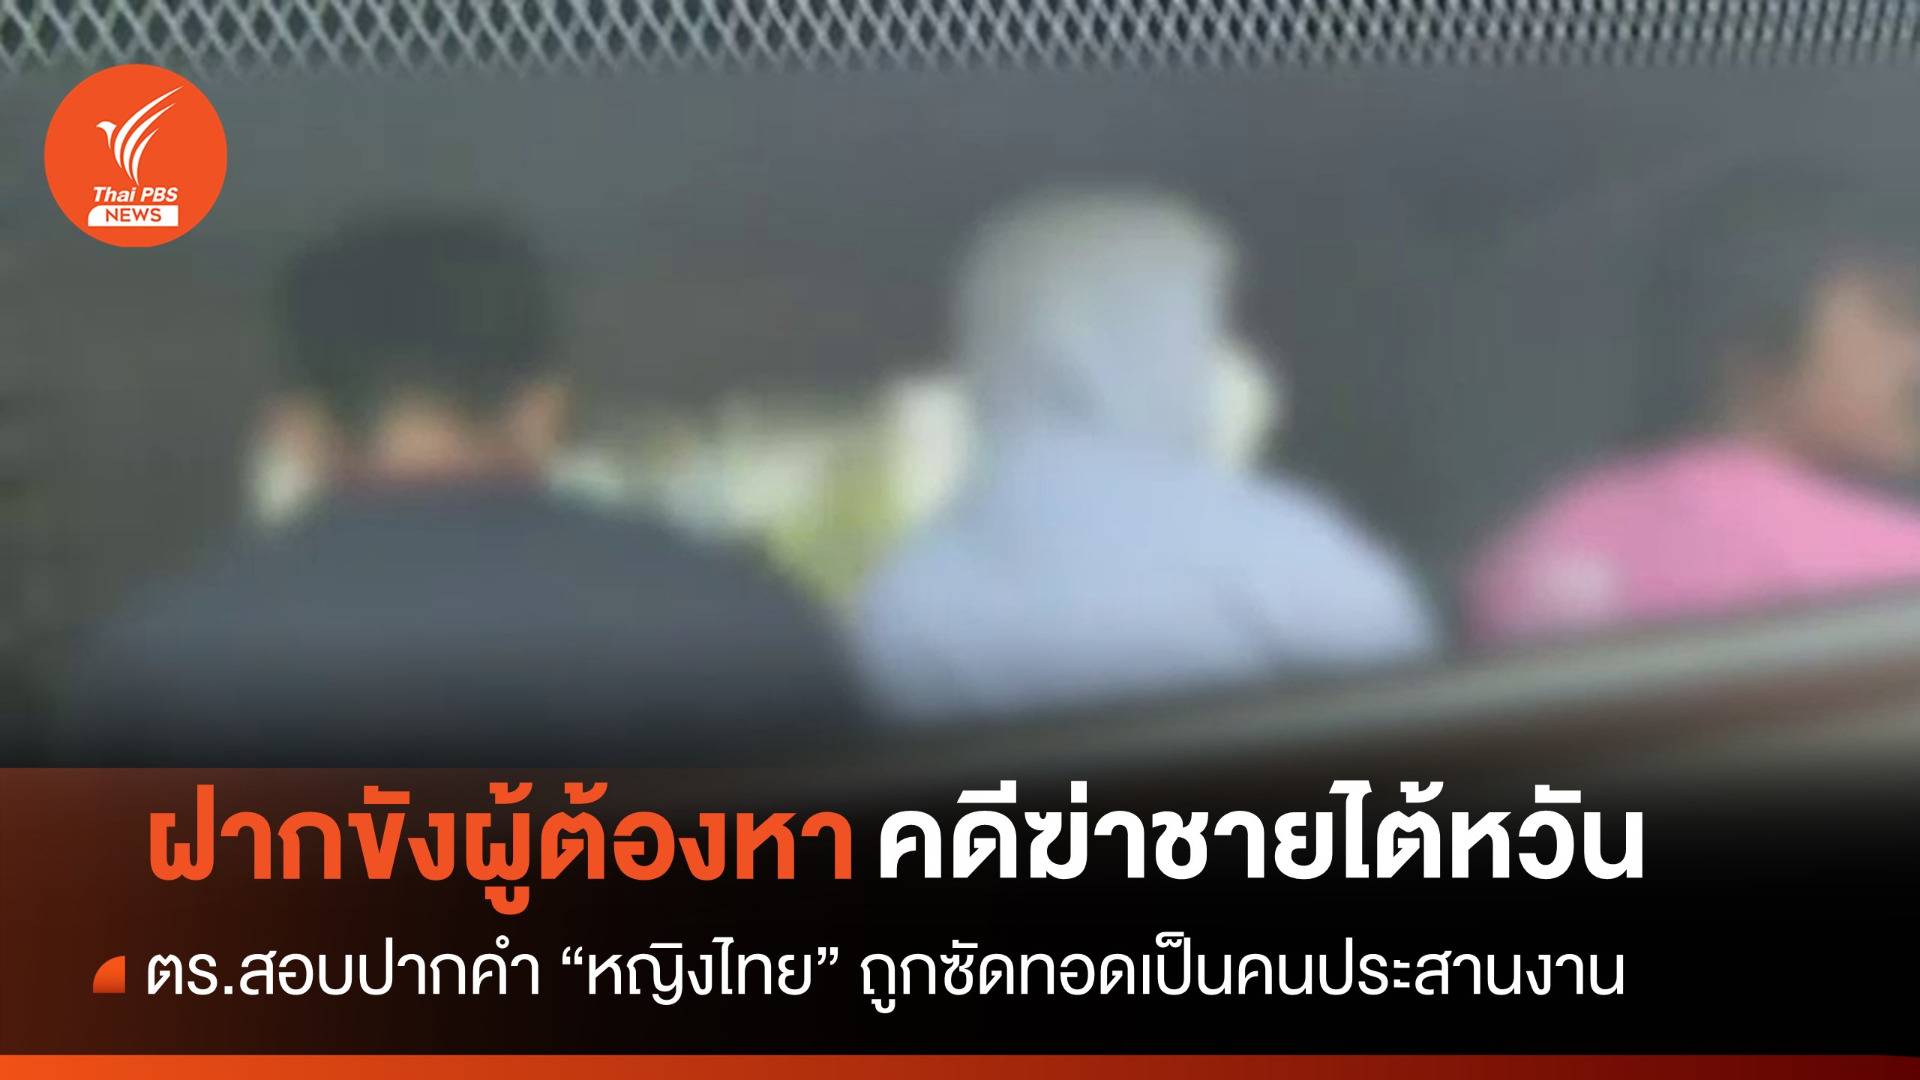 ตร.คุมตัวหญิงไทยสอบปากคำ-ฝากขัง 2 ผู้ต้องหาคดีฆ่าชายไต้หวัน